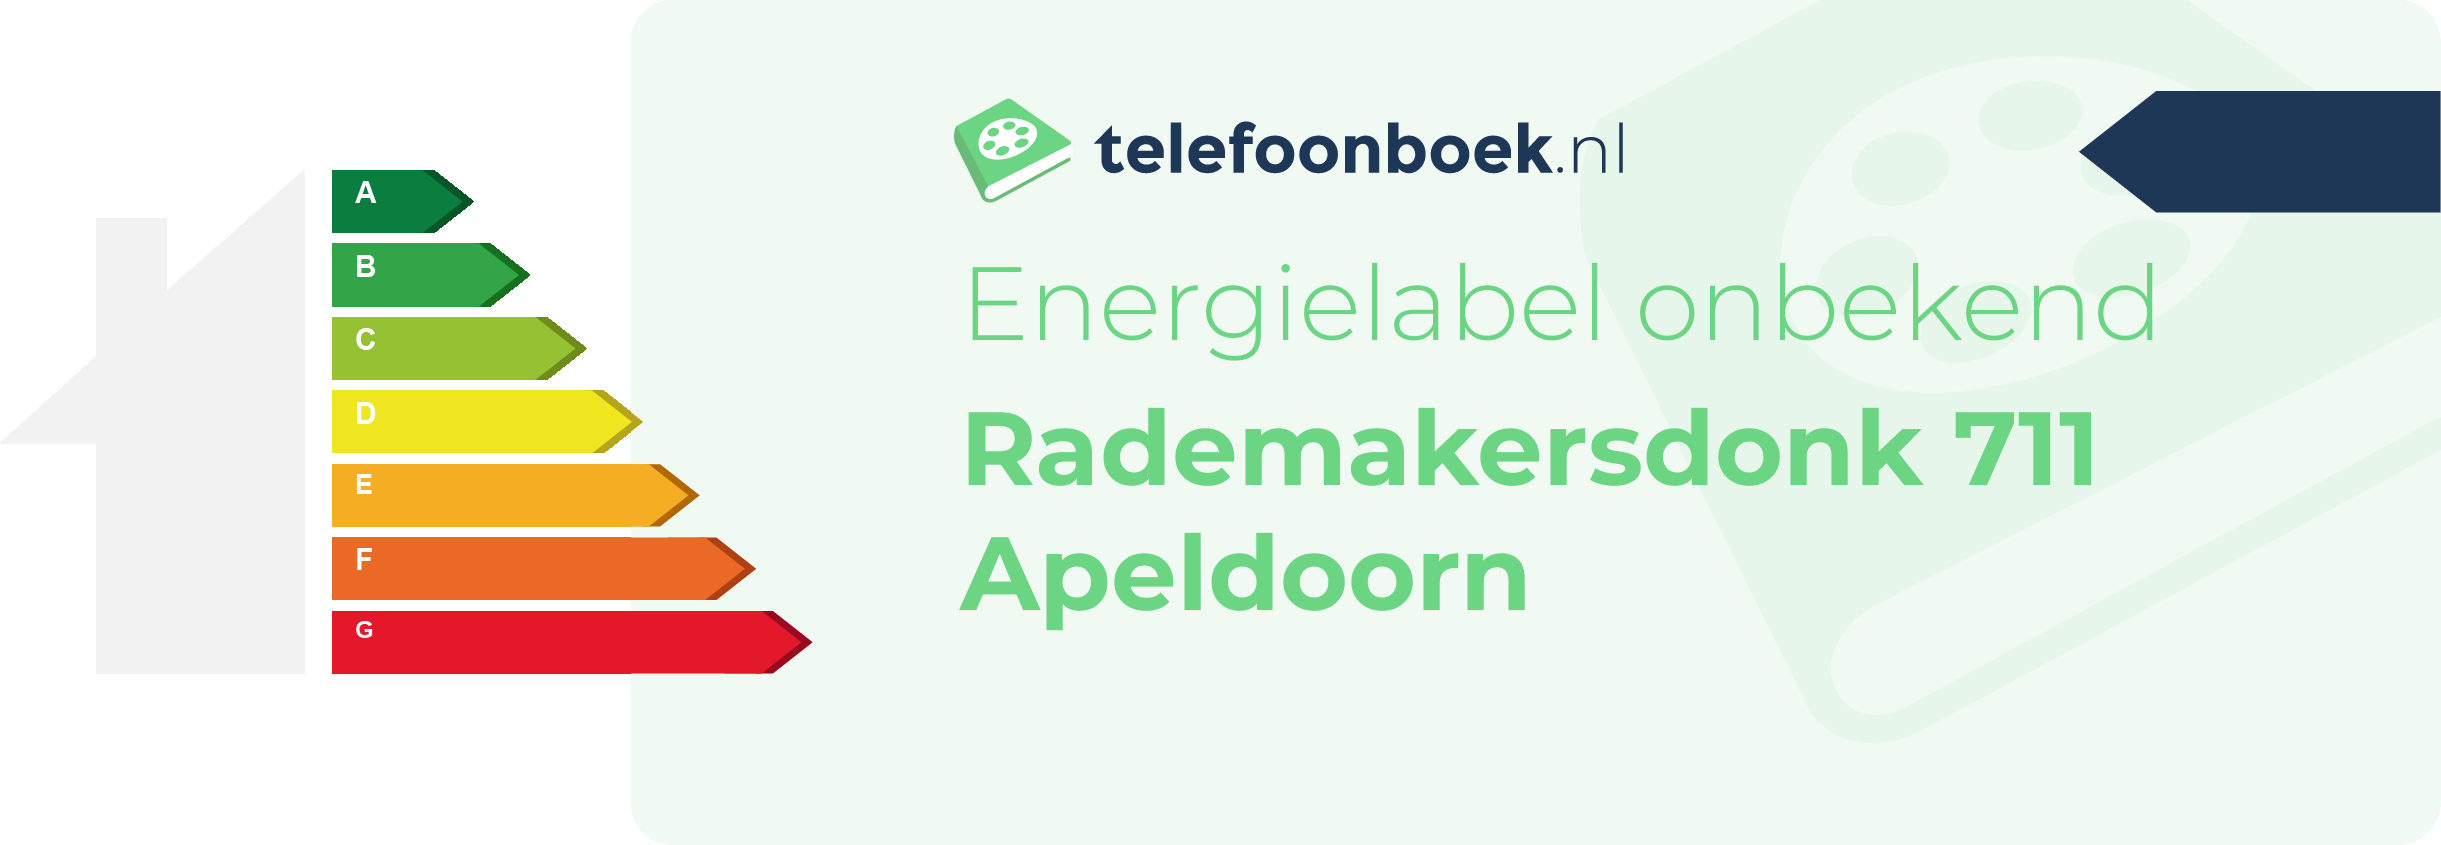 Energielabel Rademakersdonk 711 Apeldoorn